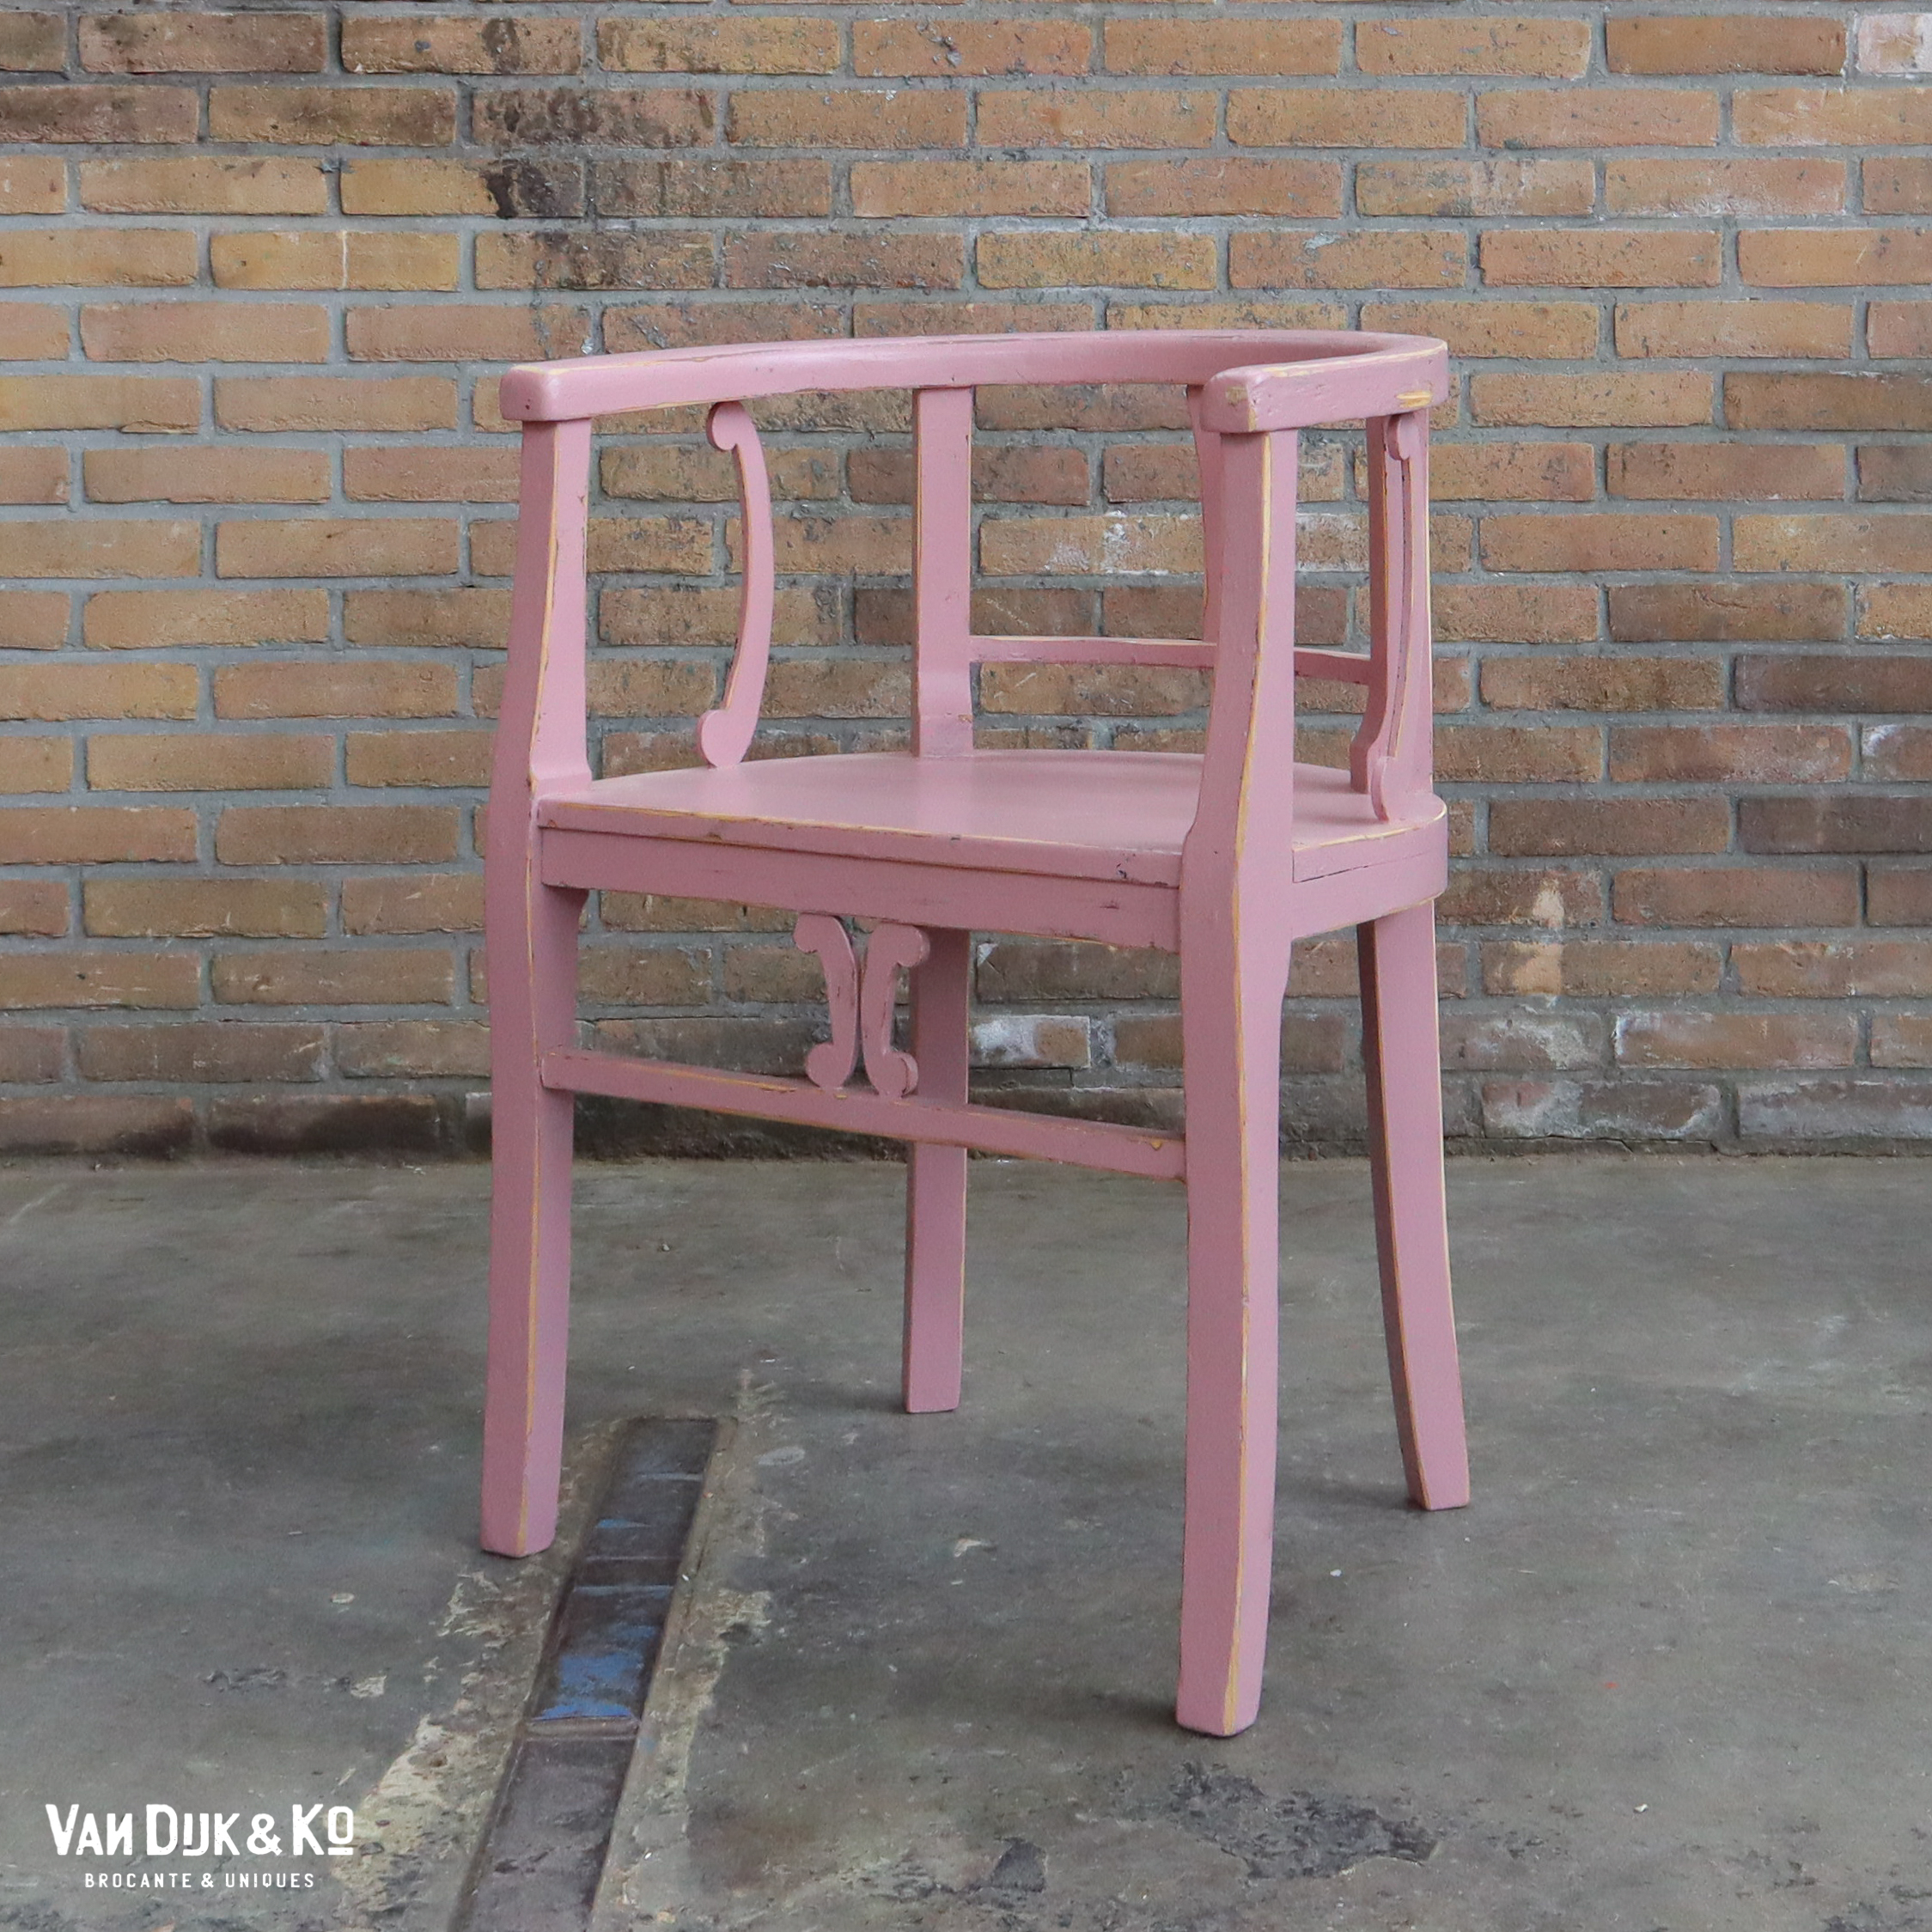 Brocante roze stoel » Van Dijk